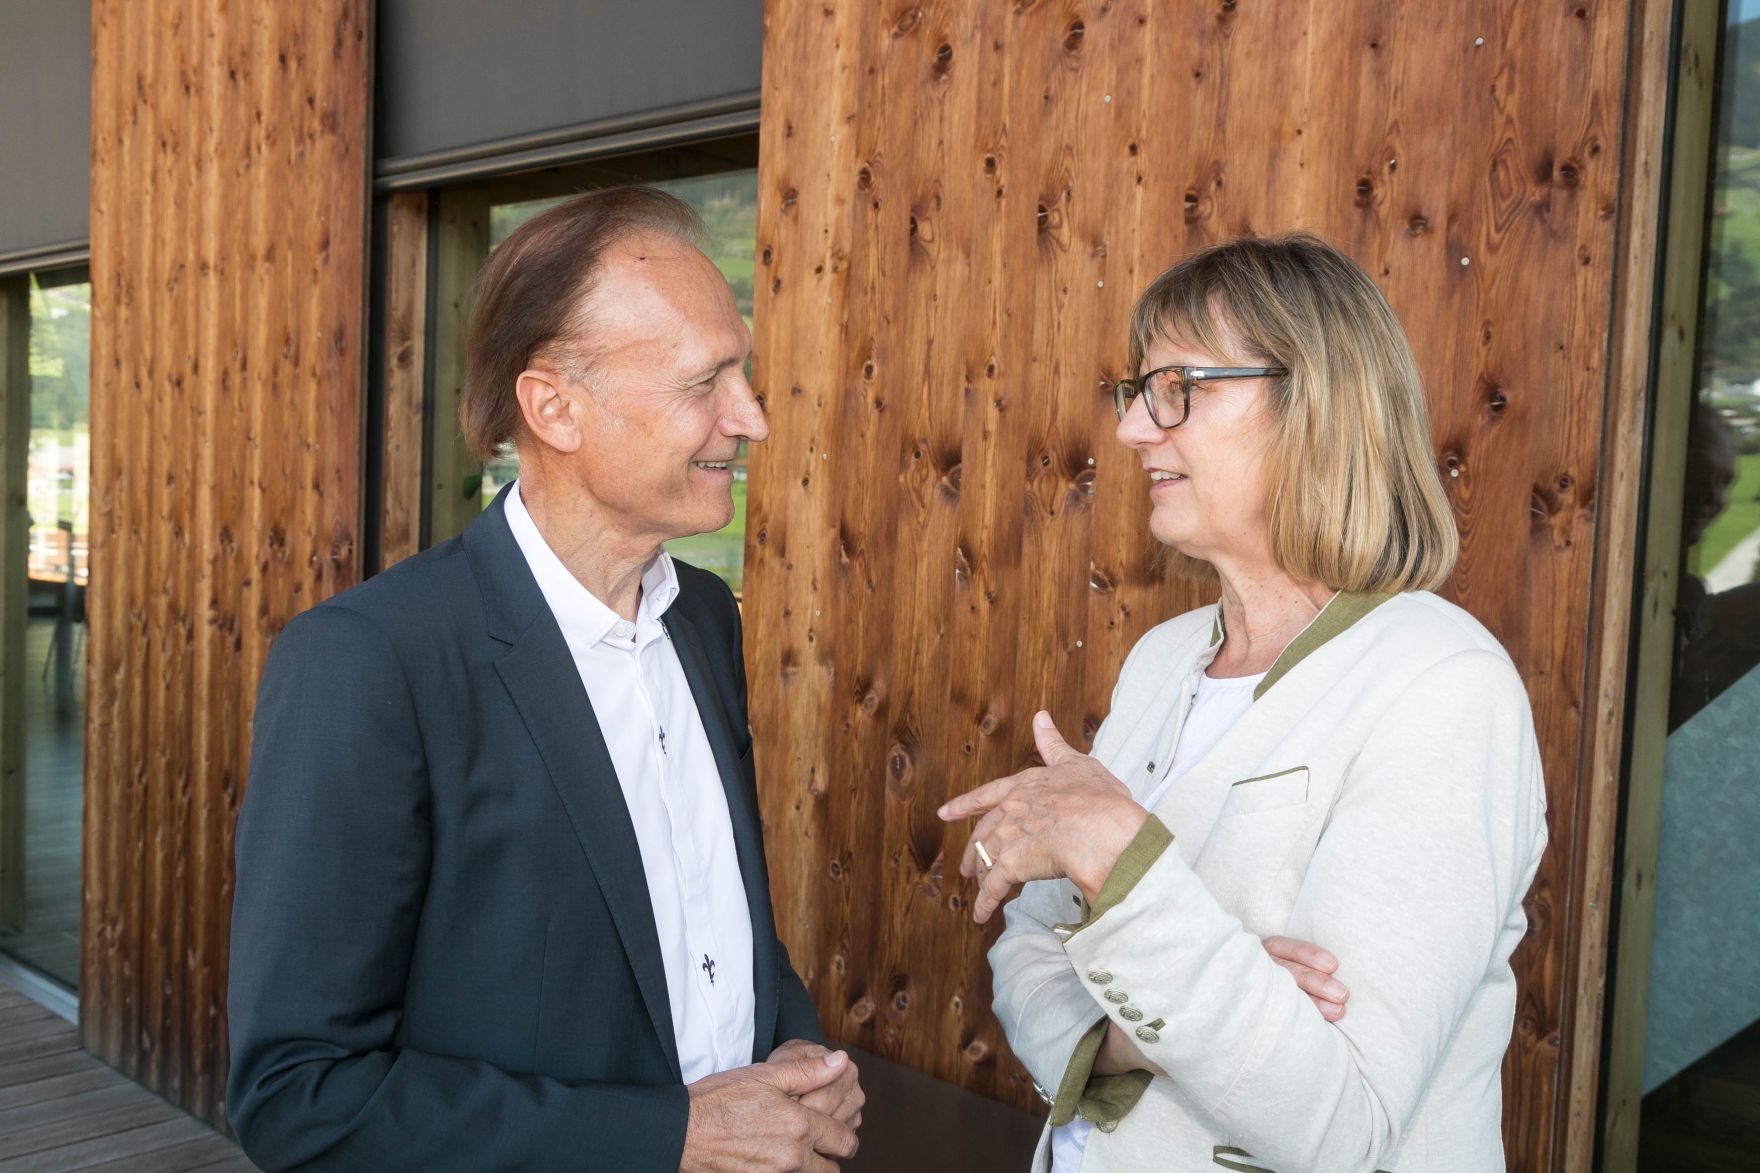 Bundesministerin Maria Patek besichtigte am Rande des Europ&auml;ischen Forums Alpbach die Binderholz GmbH. Die nachhaltige Nutzung der nat&uuml;rlichen Ressource Holz ist ein wesentlicher Schwerpunkt f&uuml;r das BMNT.